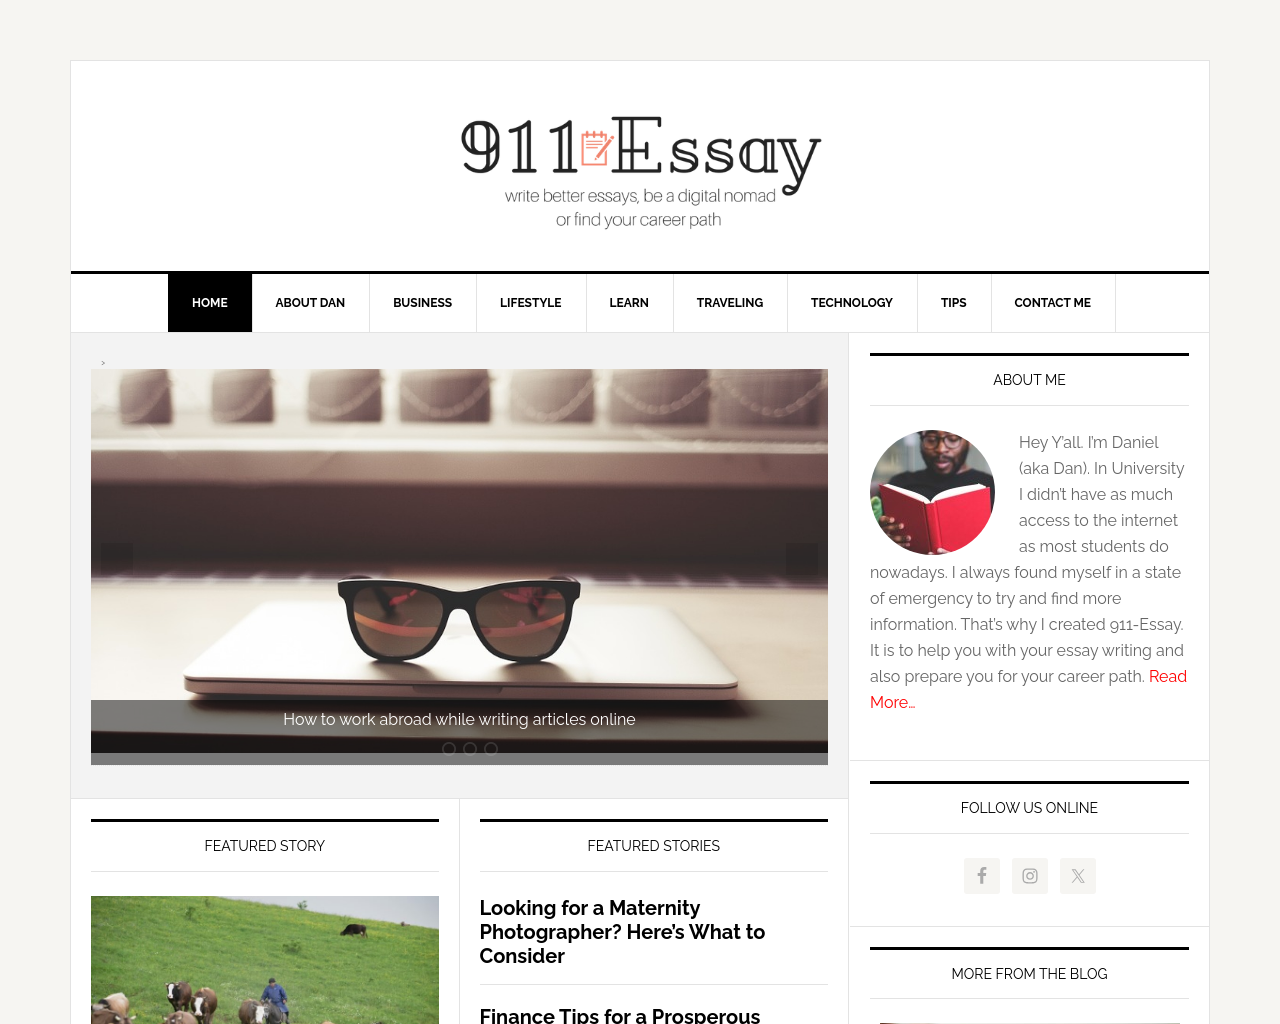 911-essay.com